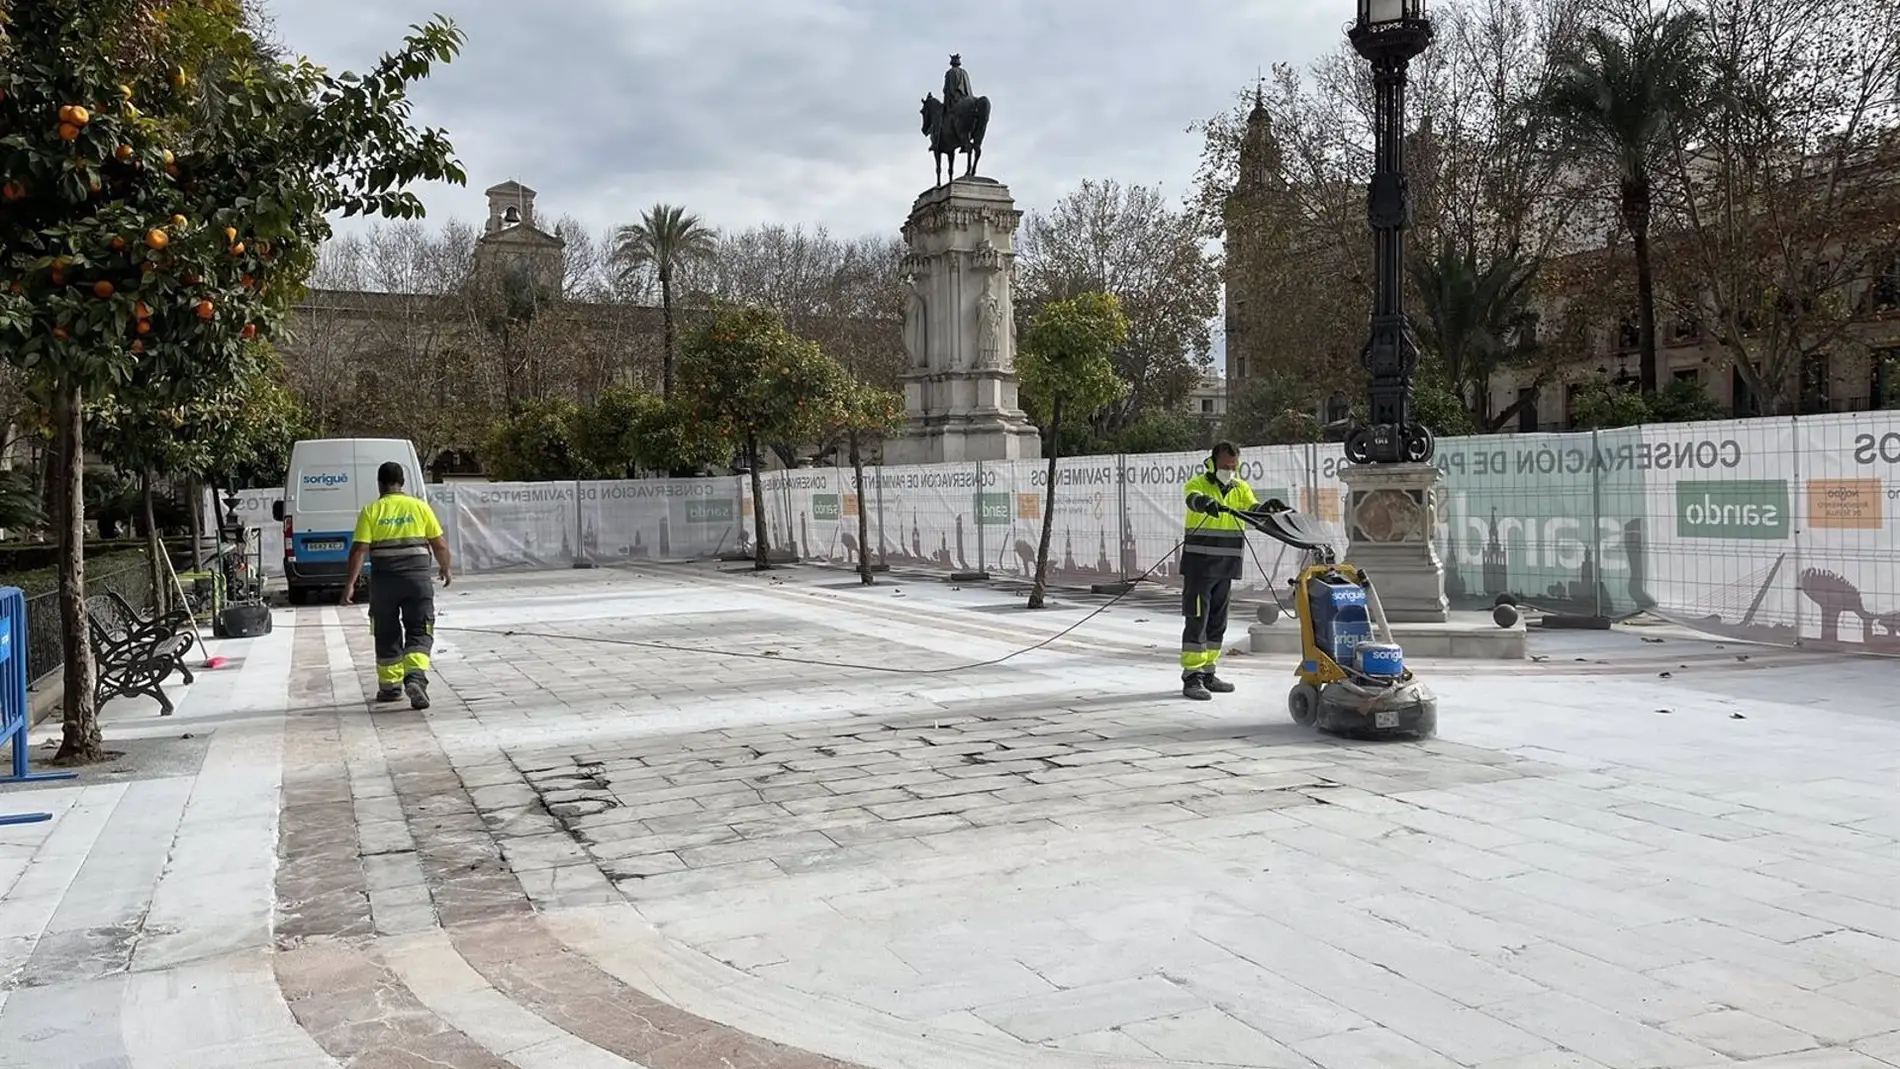 Operarios realizan las tareas antideslizantes sobre el suelo de Plaza Nueva